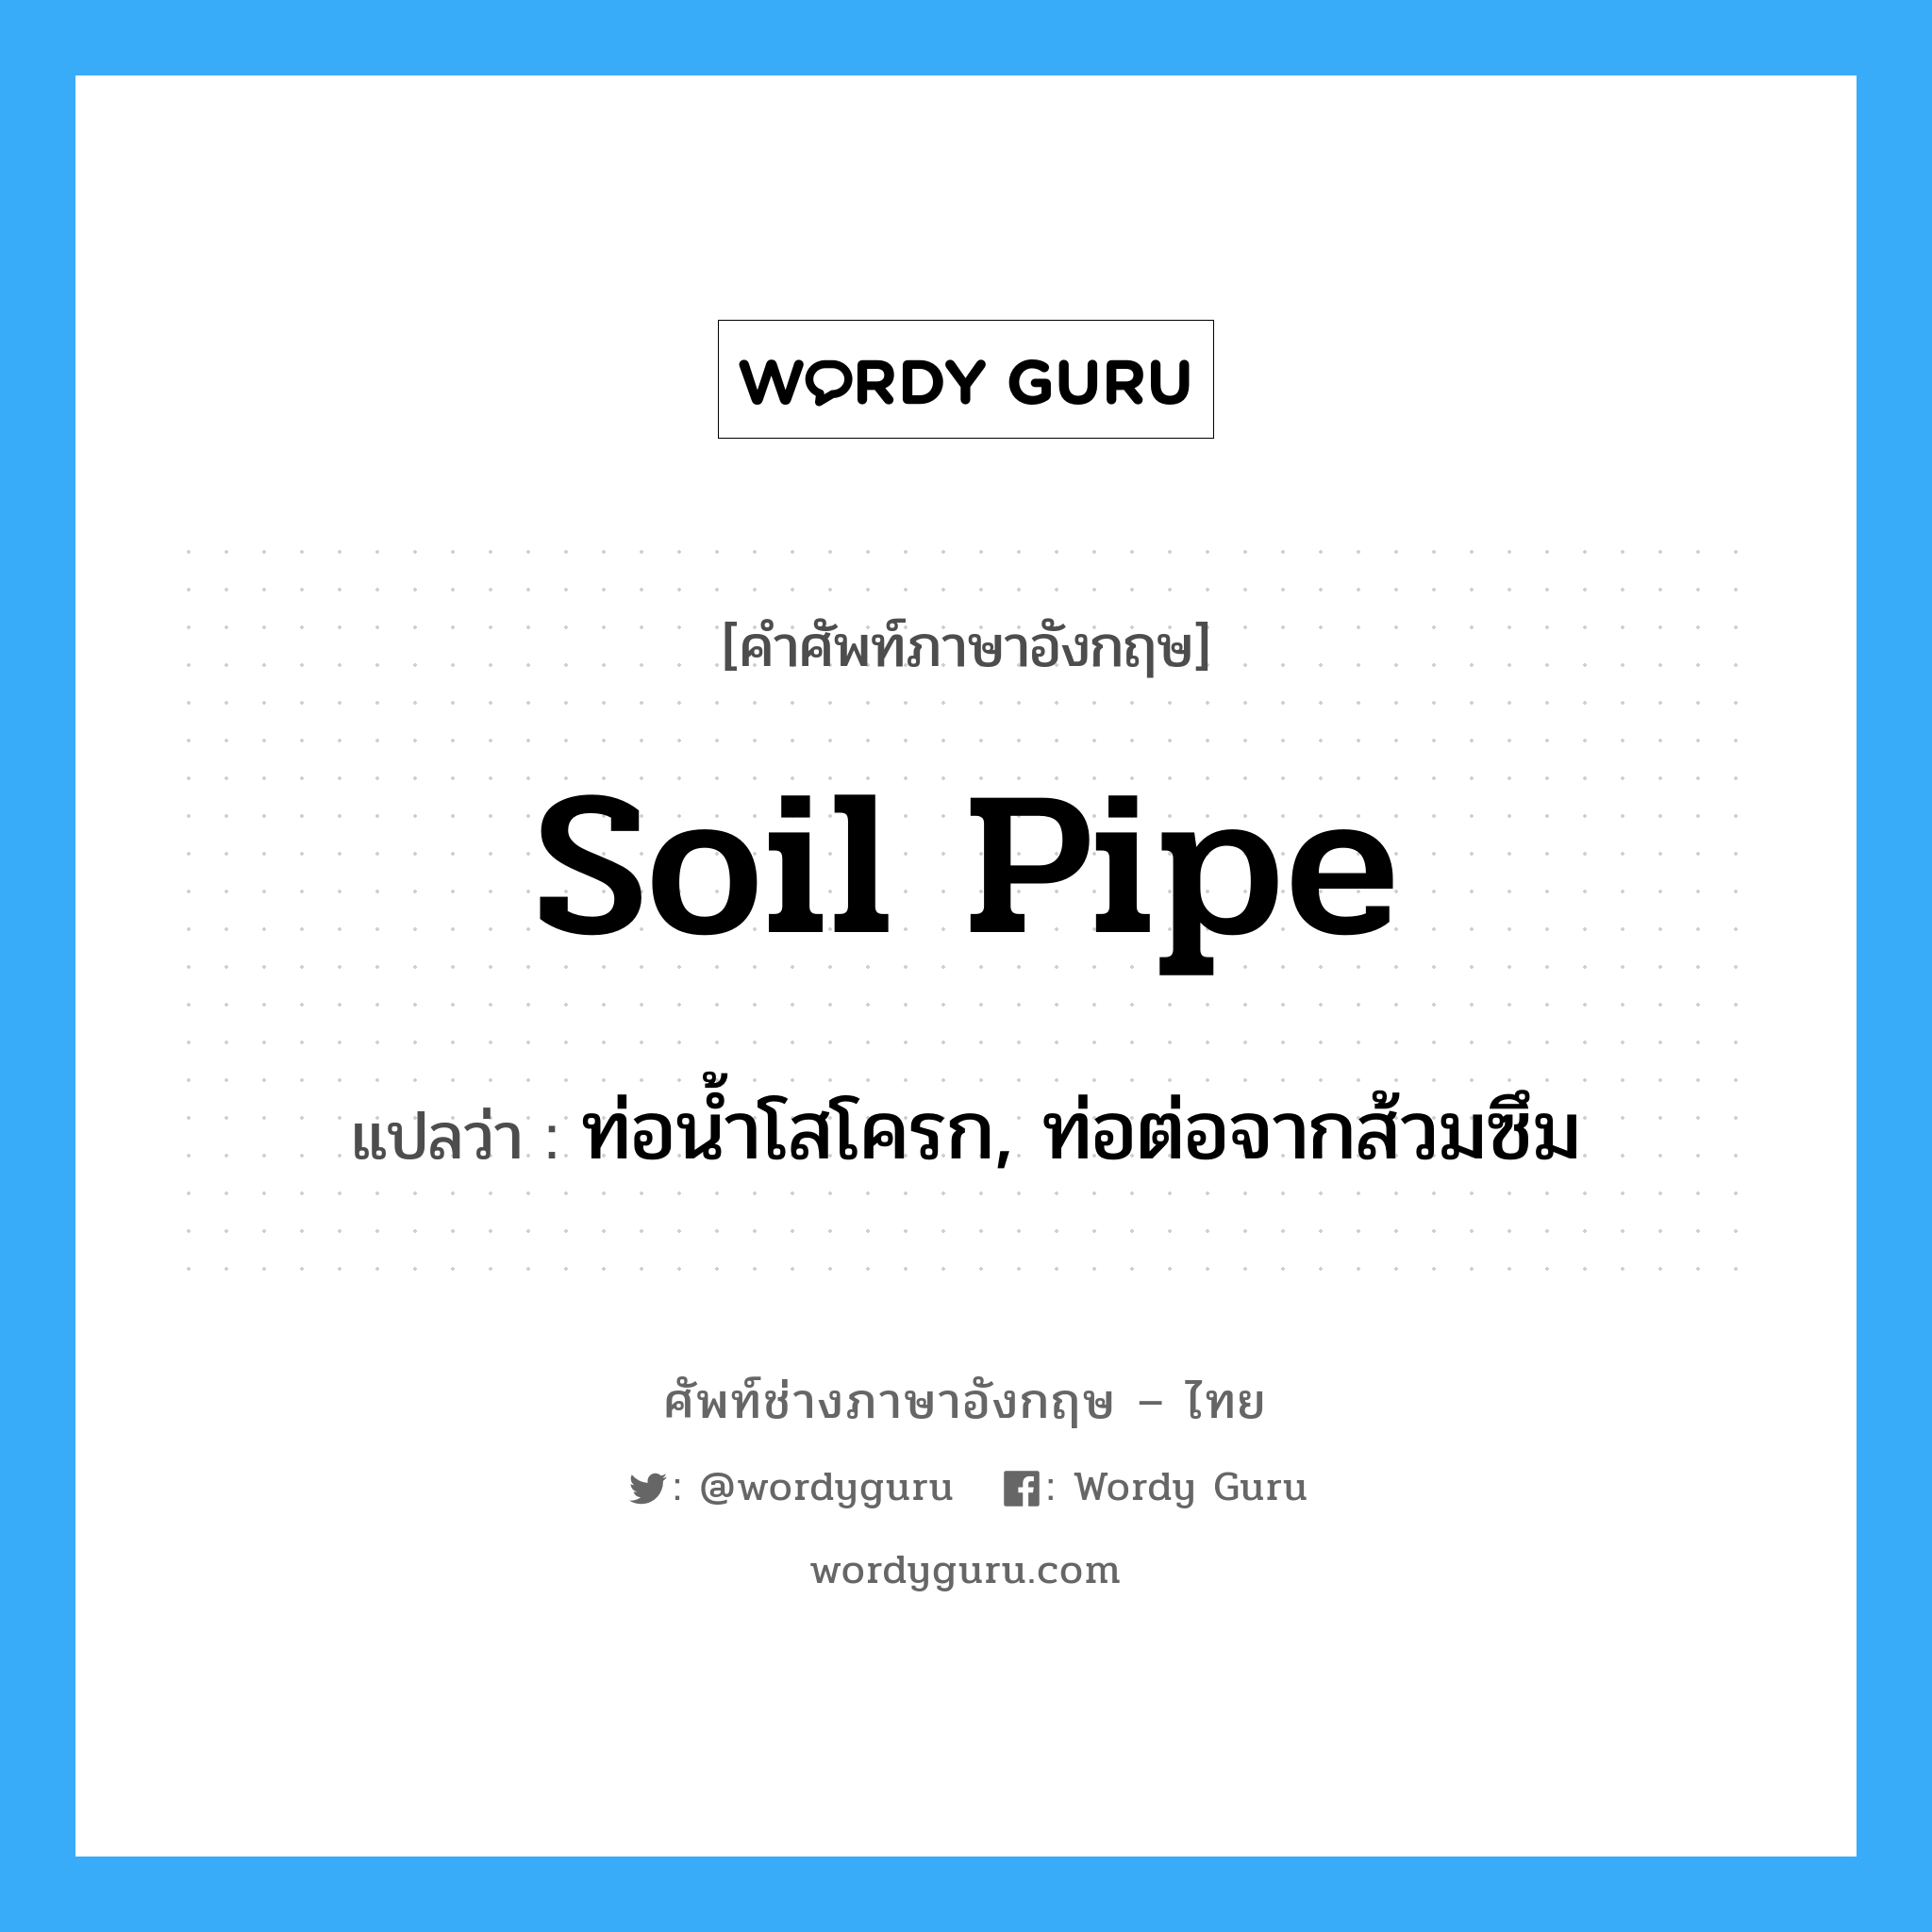 soil pipe แปลว่า?, คำศัพท์ช่างภาษาอังกฤษ - ไทย soil pipe คำศัพท์ภาษาอังกฤษ soil pipe แปลว่า ท่อน้ำโสโครก, ท่อต่อจากส้วมซึม